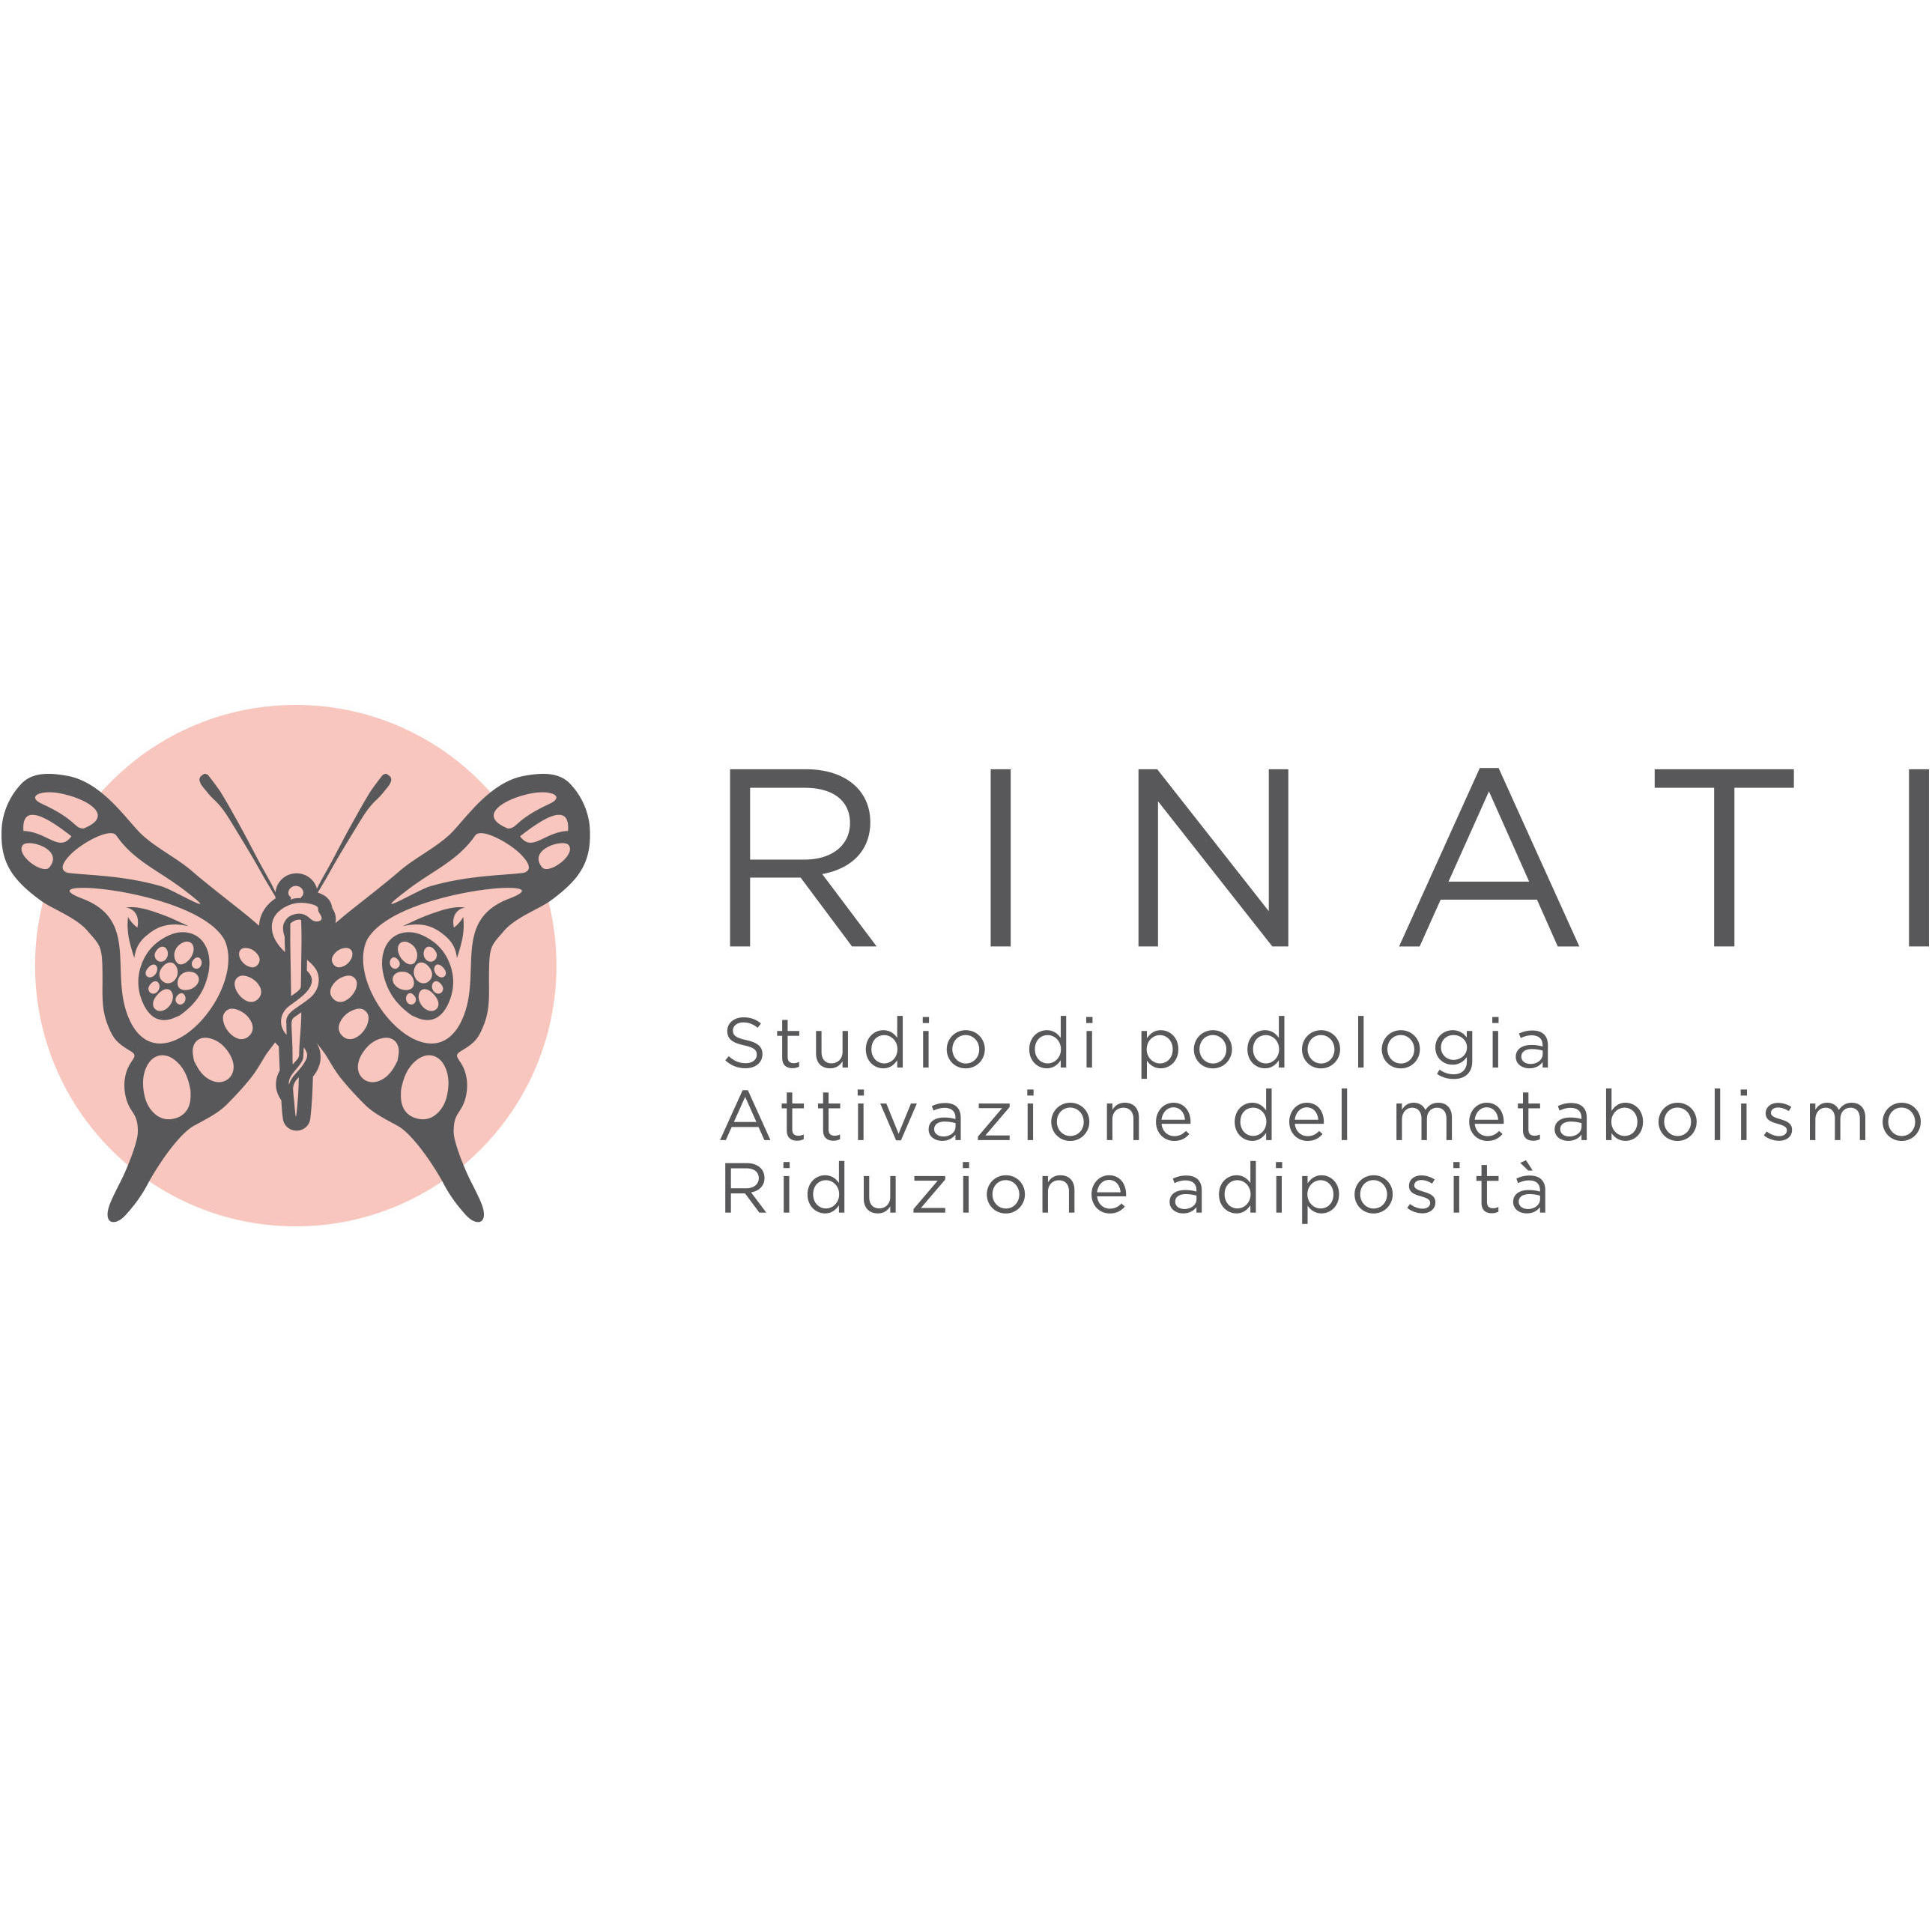 RINATI Studio di Podologia Fieni Renata e attivazione metabolismo aerobico Logo